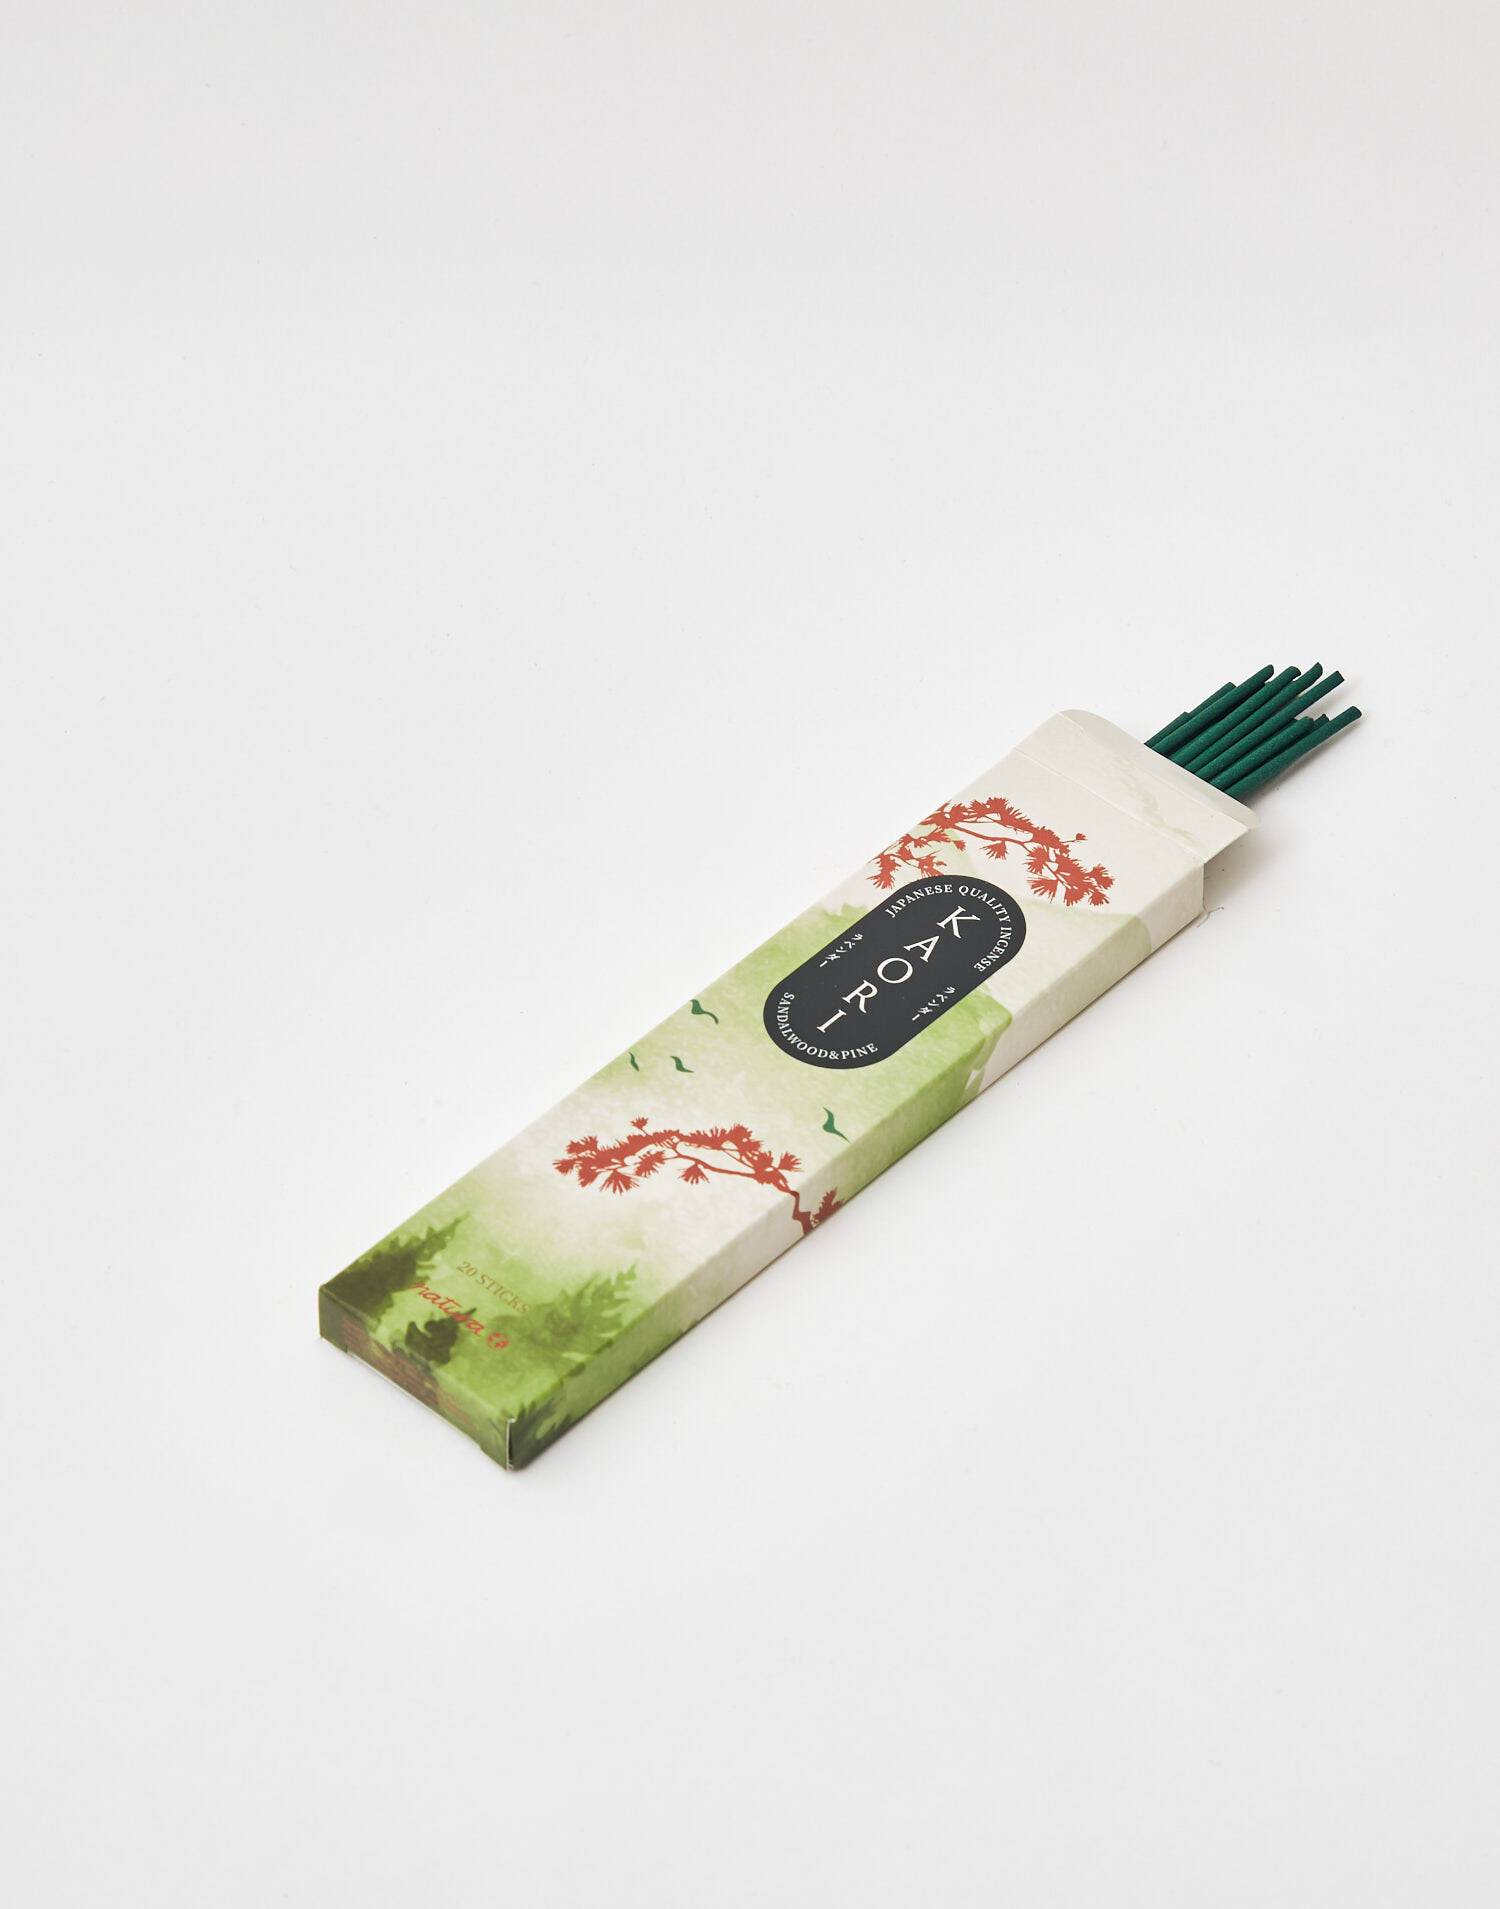 Euroscents Diffusion S.L. - Incienso japonés, disfruta de nuestra colección  de incienso sin médula con aromas inspirados en la cultura japonesa. #japon  #incienso #incense #japan #euroscents #aroma #hogar #fragrance #exclusive